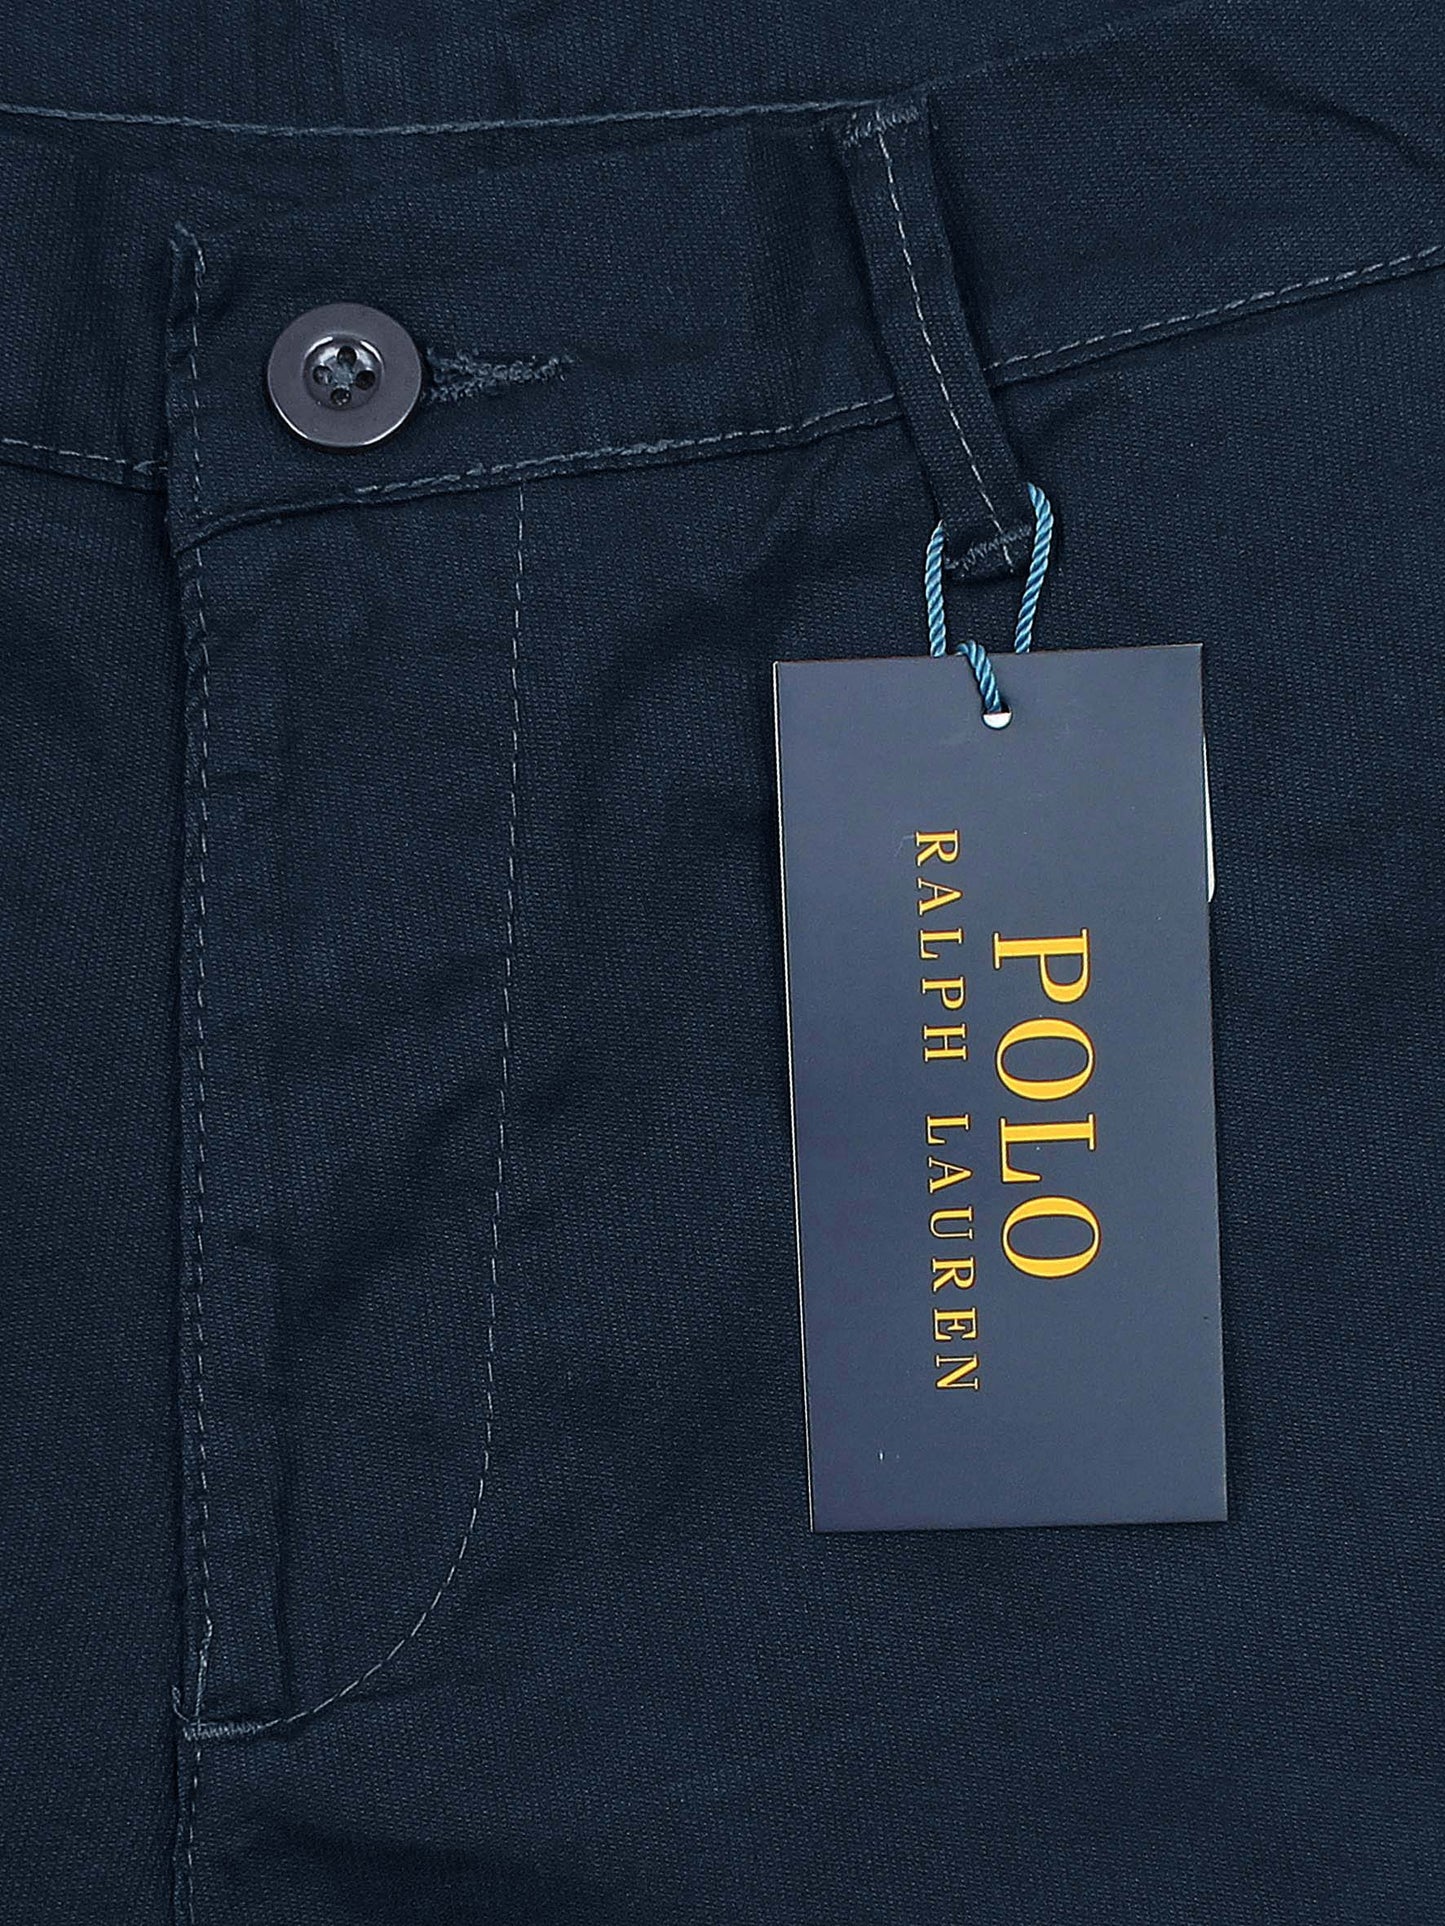 Premium R/L Cotton Chinos - Navy Blue